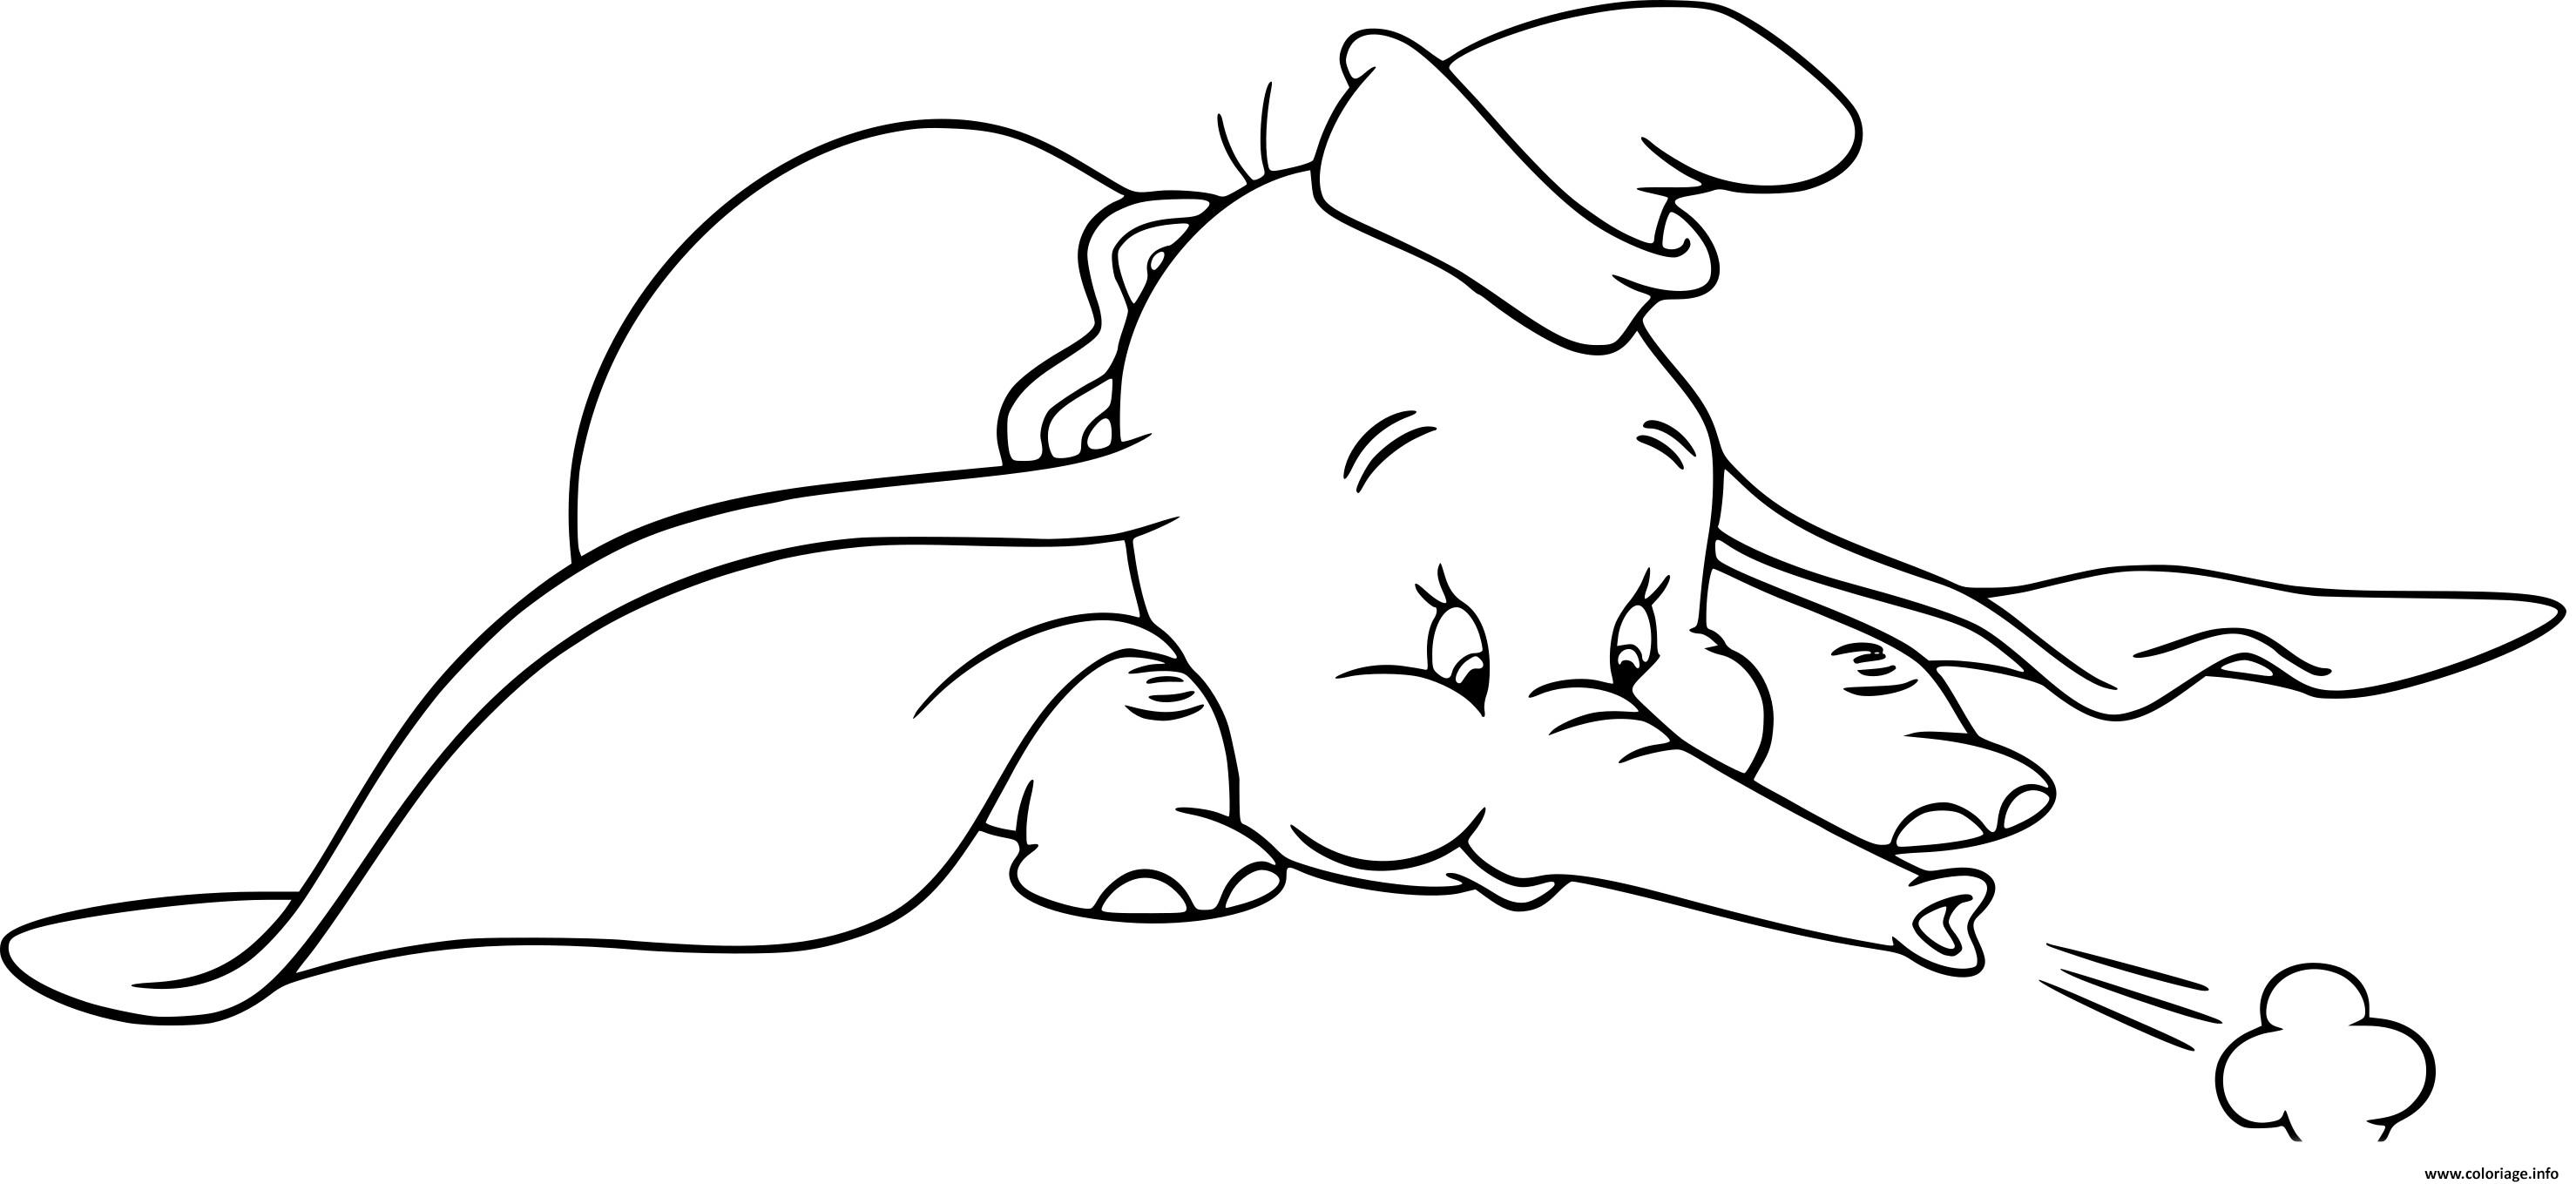 Coloriage Dumbo Elephant Avec Des Oreilles Surdimensionnees Jecolorie Com